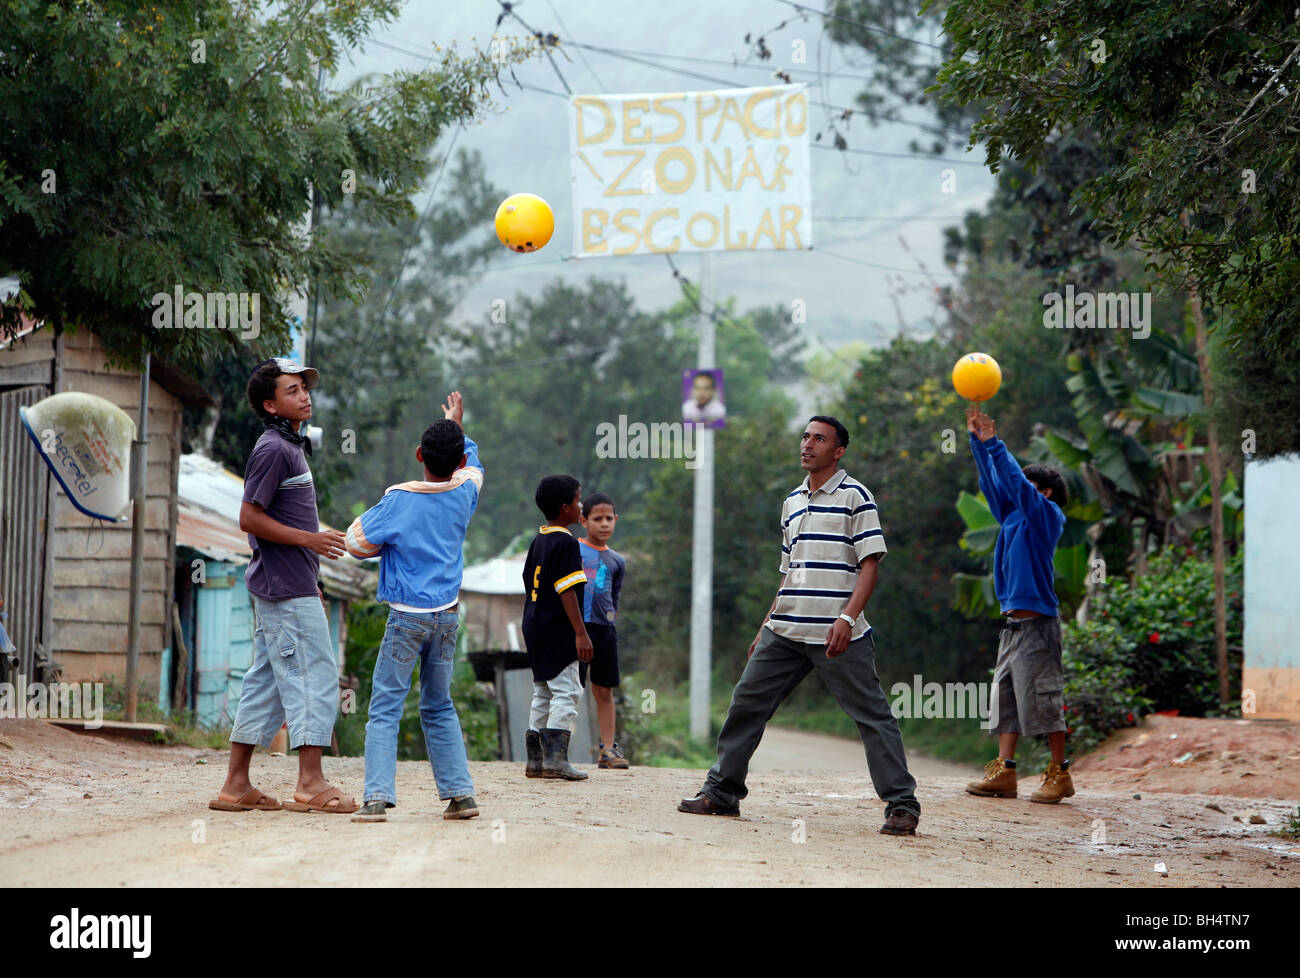 Un enseignant de l'école dans un petit village joue balle avec sa étudiants dans le cadre d'un signe fait main zone scolaire, la République Dominicaine Banque D'Images